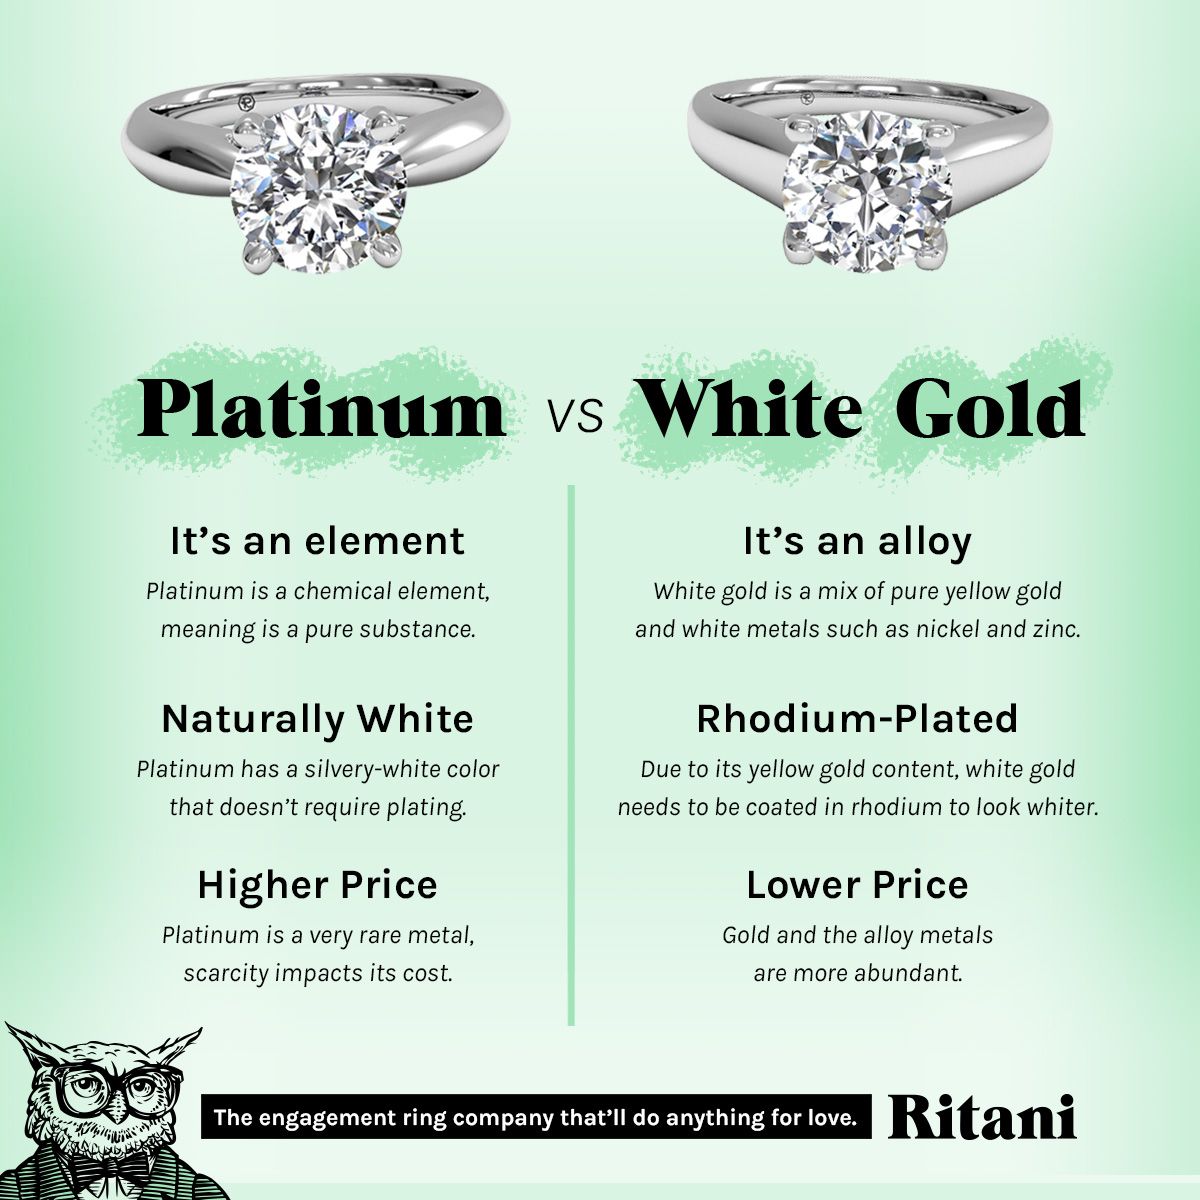 platinum vs white gold